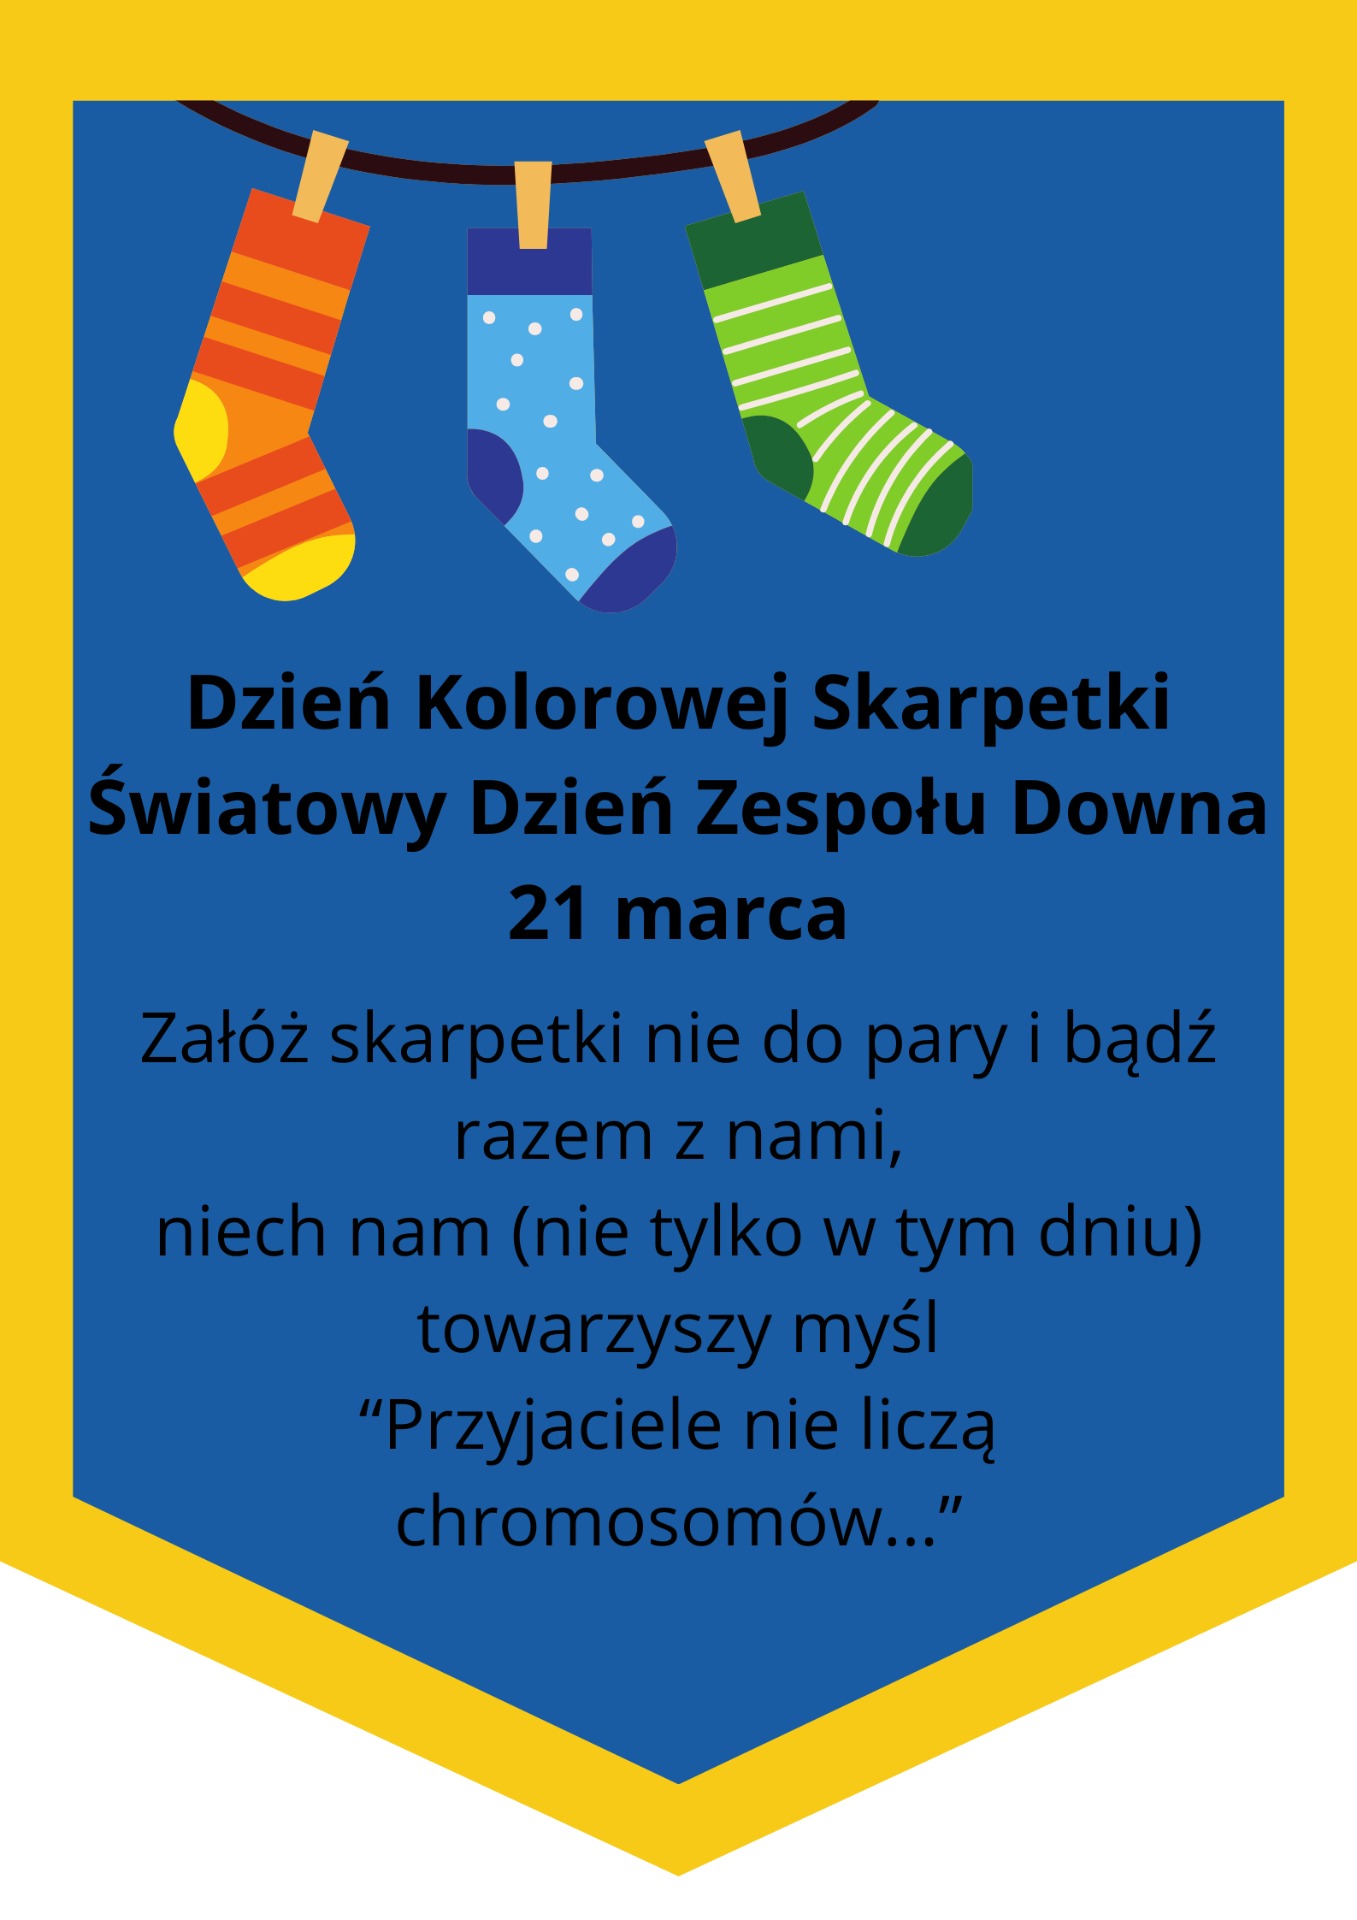 Plakat przedstawia informacje dotyczące wydarzenia: Dzień Kolorowej Skarpetki
